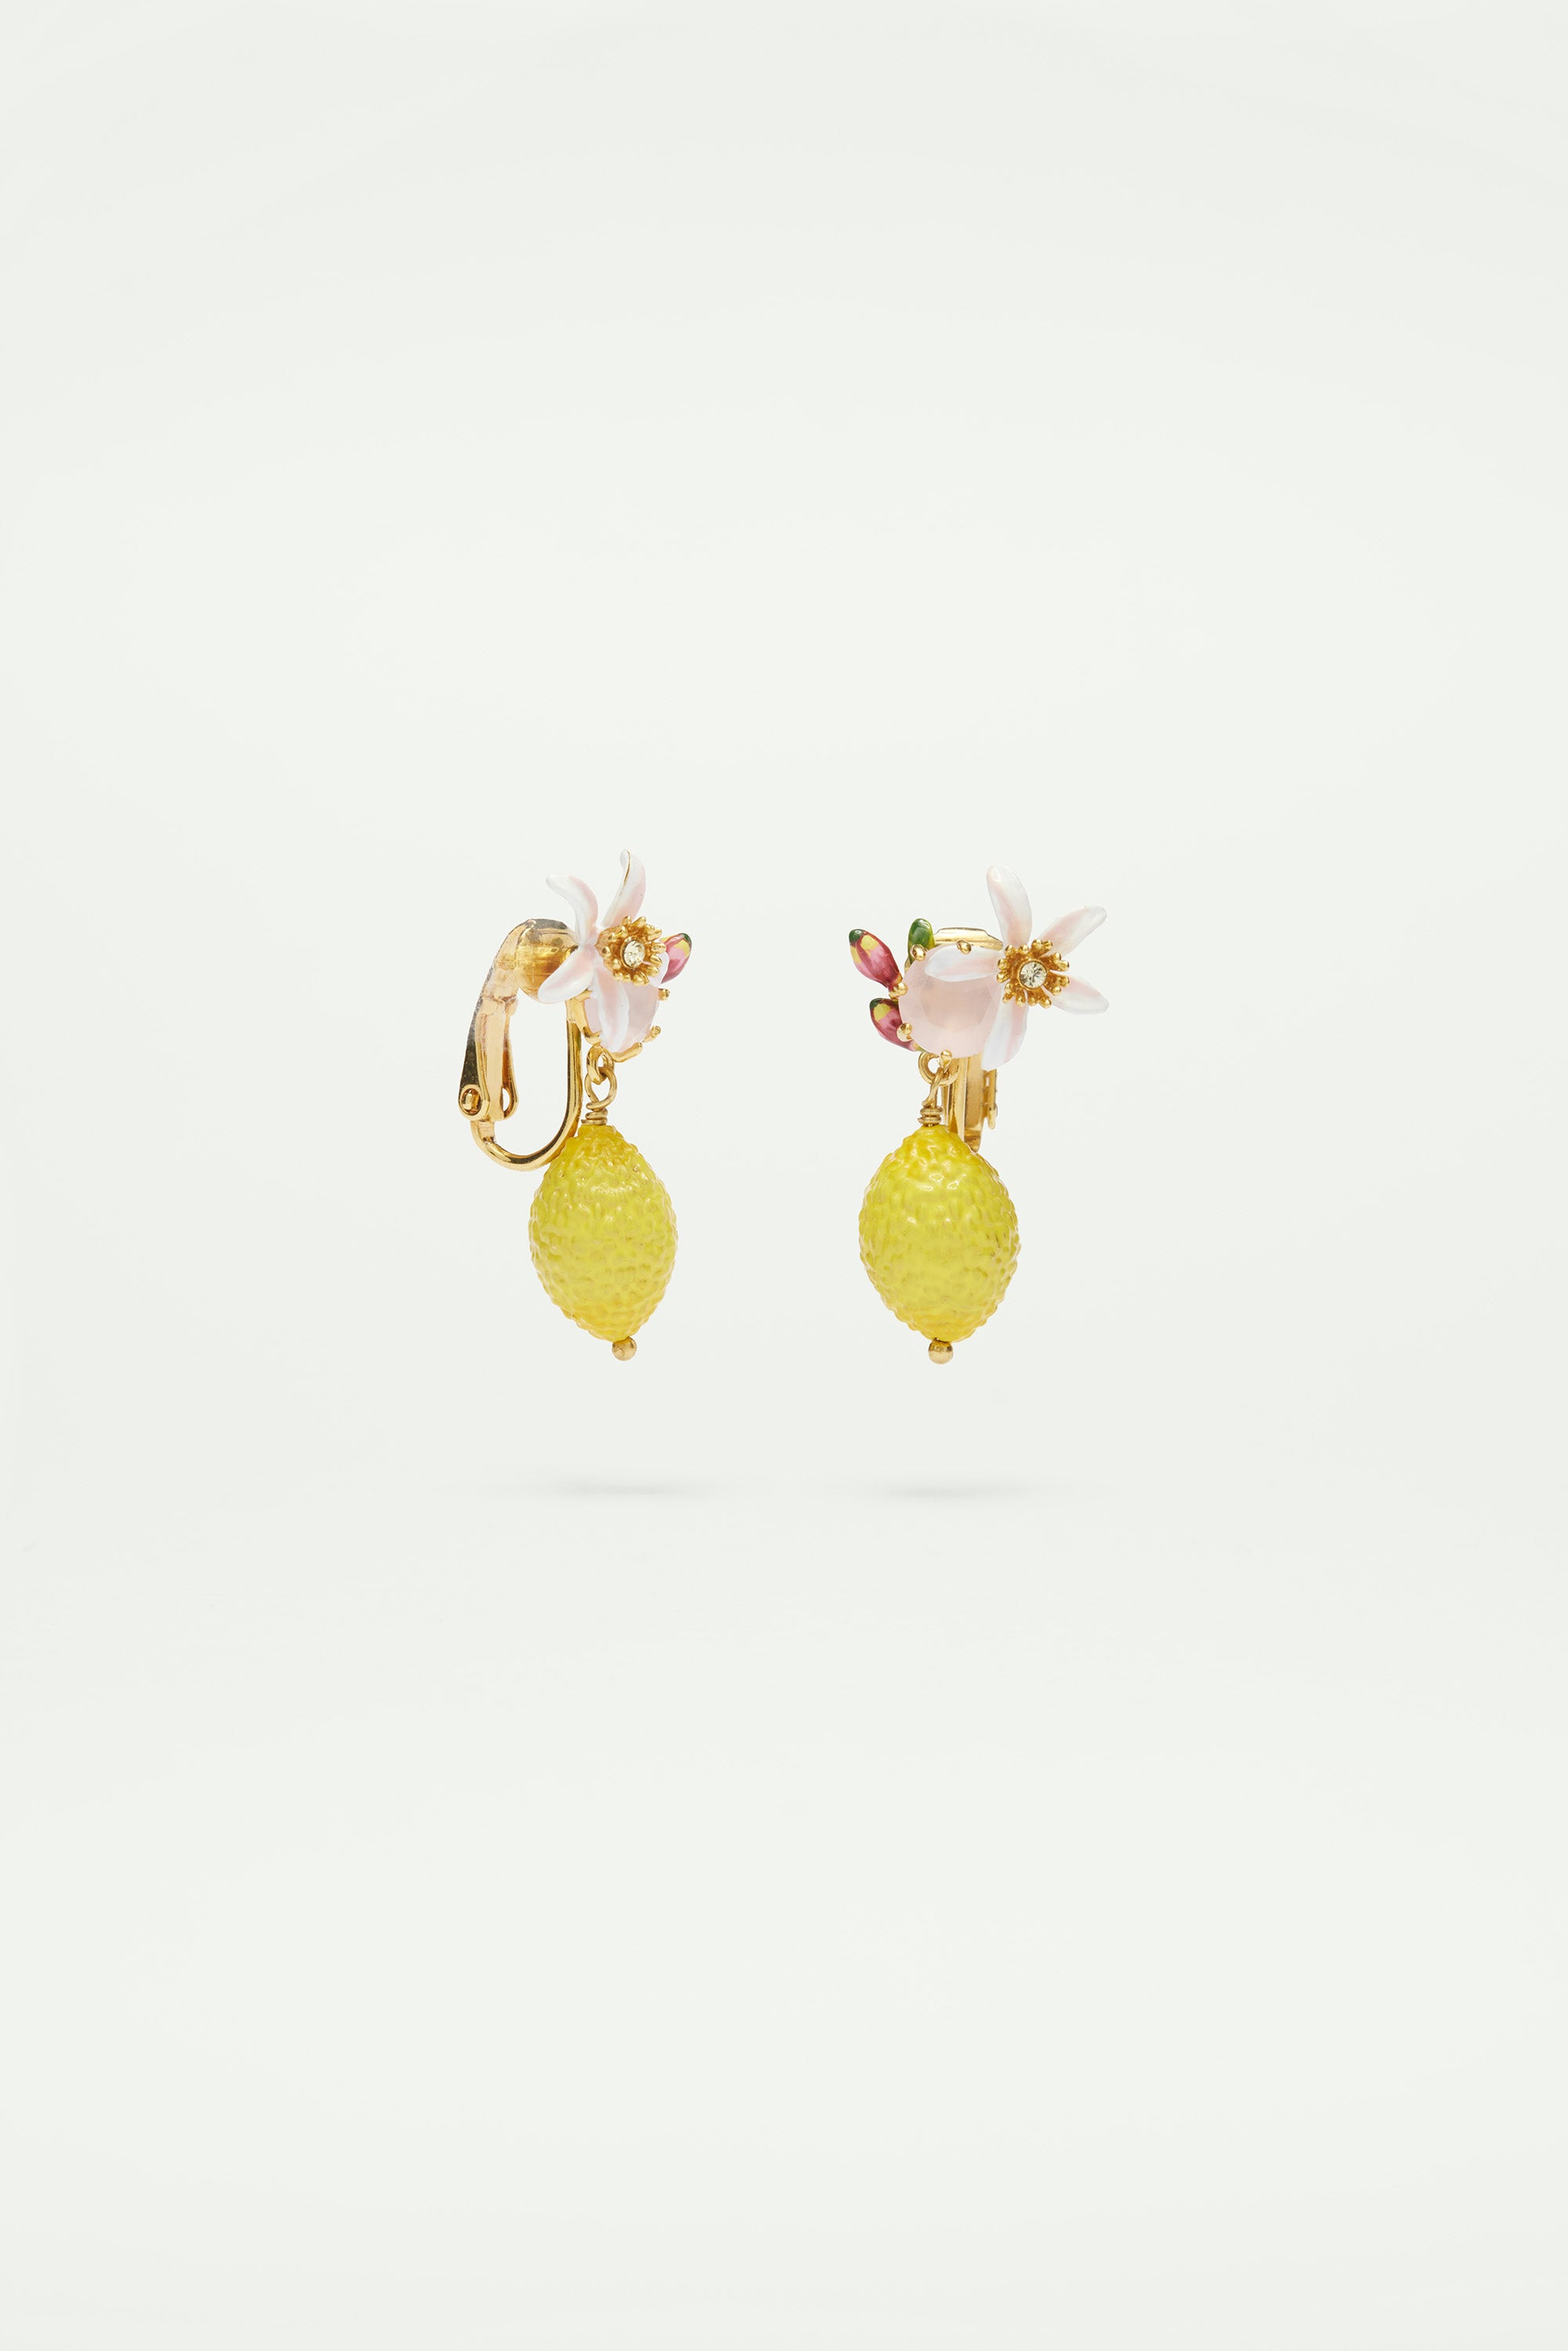 Boucles d'oreilles citron, fleur et verre facetté